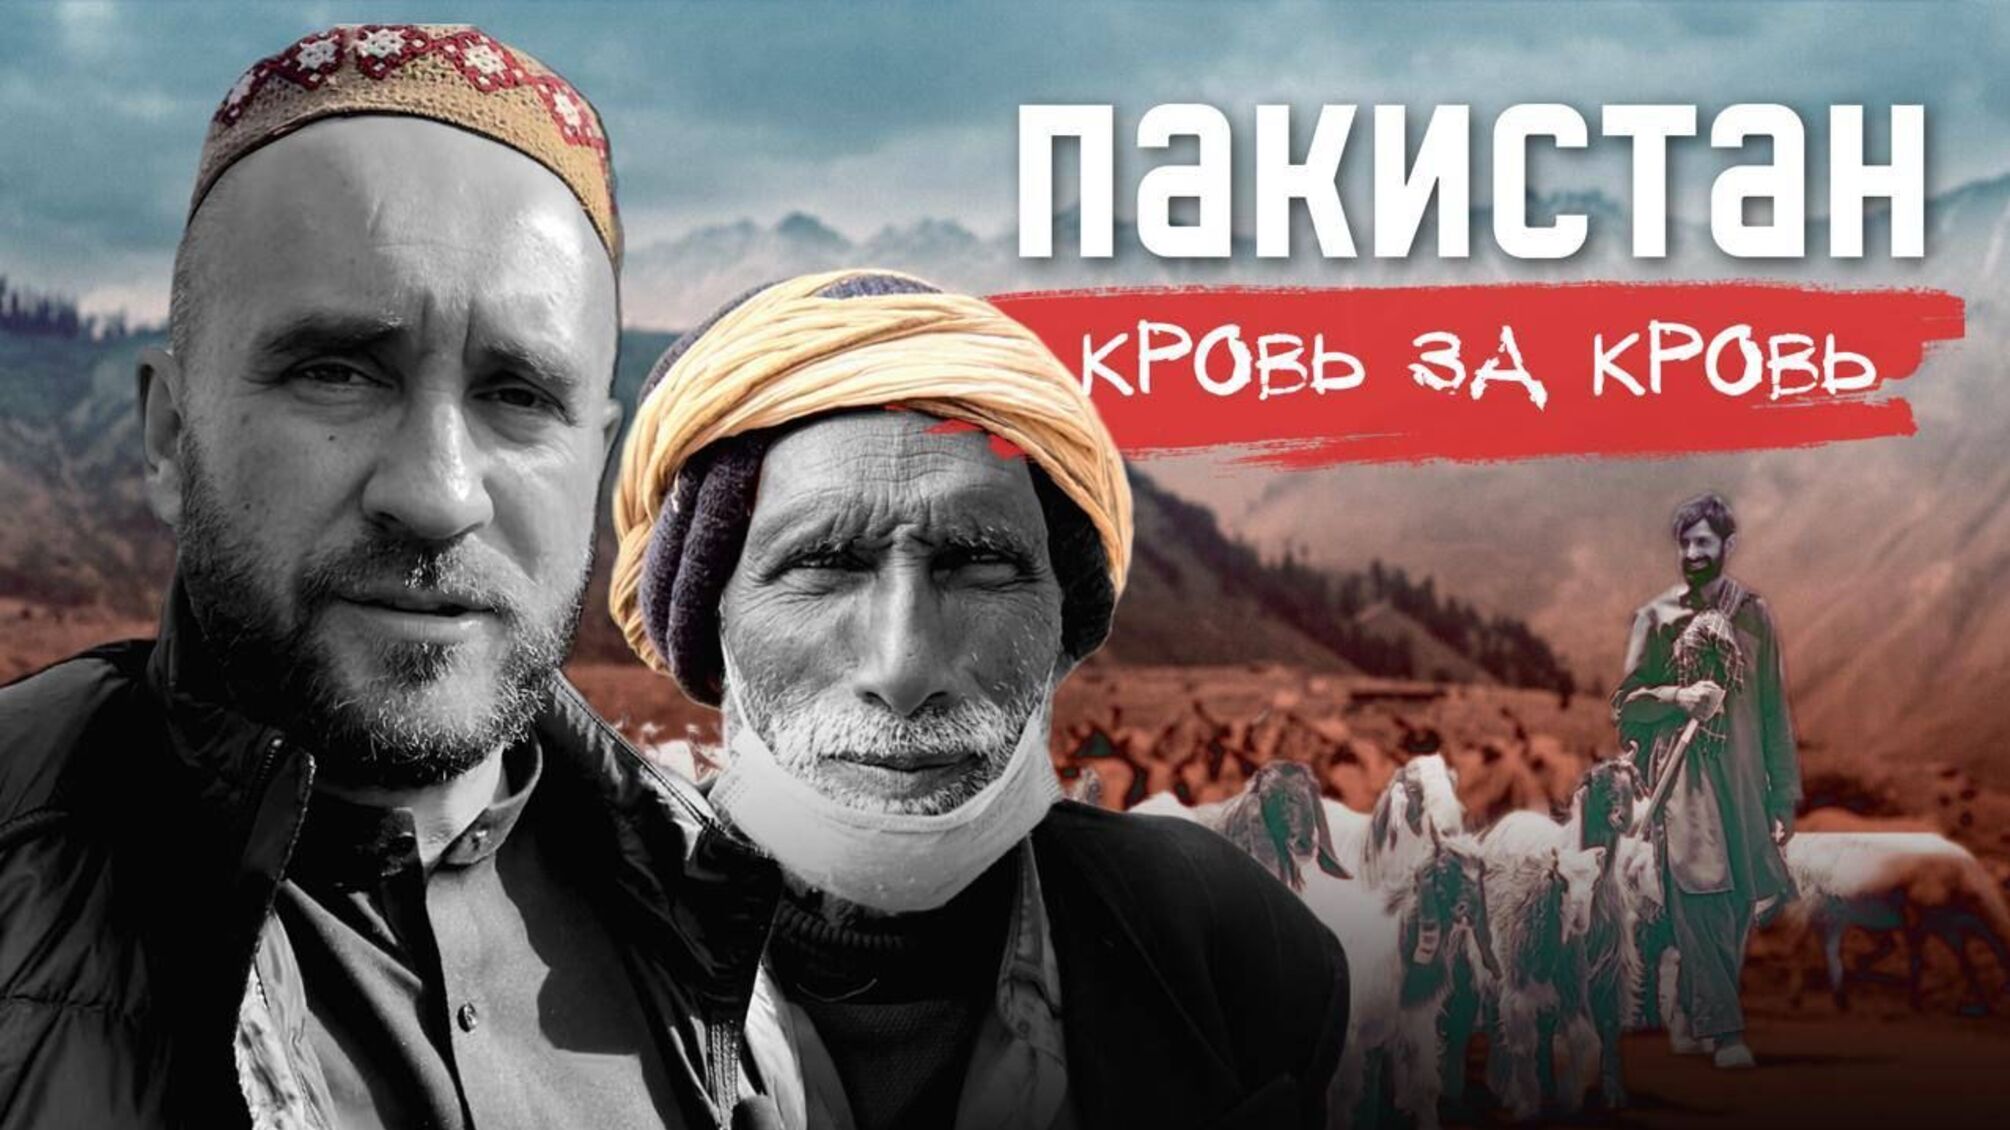 Украинский журналист Роман Бочкала представил фильм о Пакистане